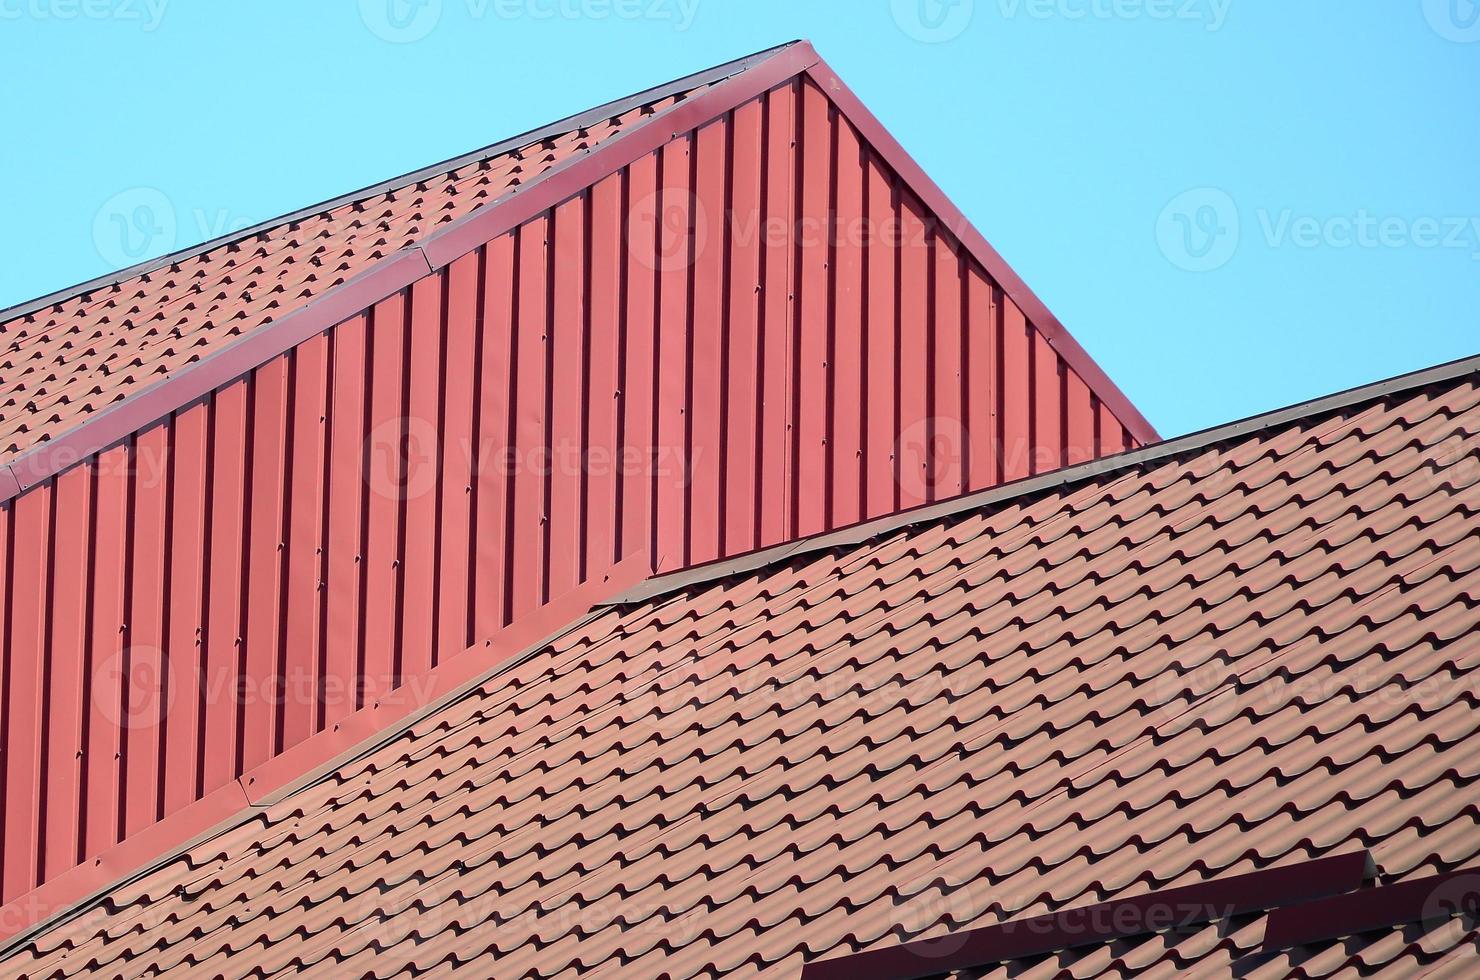 un fragmento de un techo de una teja metálica de color rojo oscuro. techos de calidad foto